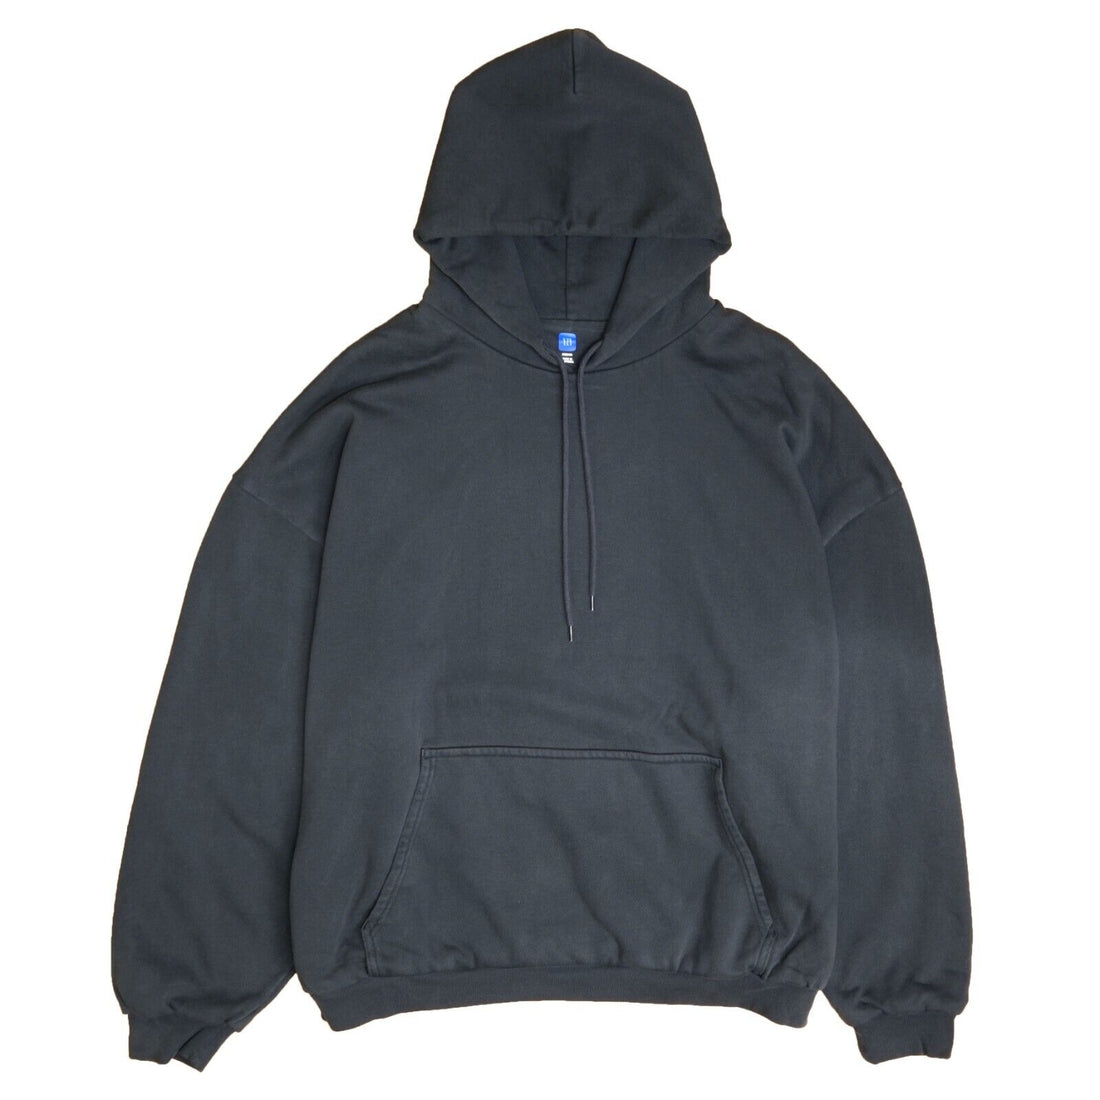 Yeezy Gap Unreleased Pullover Sweatshirt Hoodie Size Medium Black